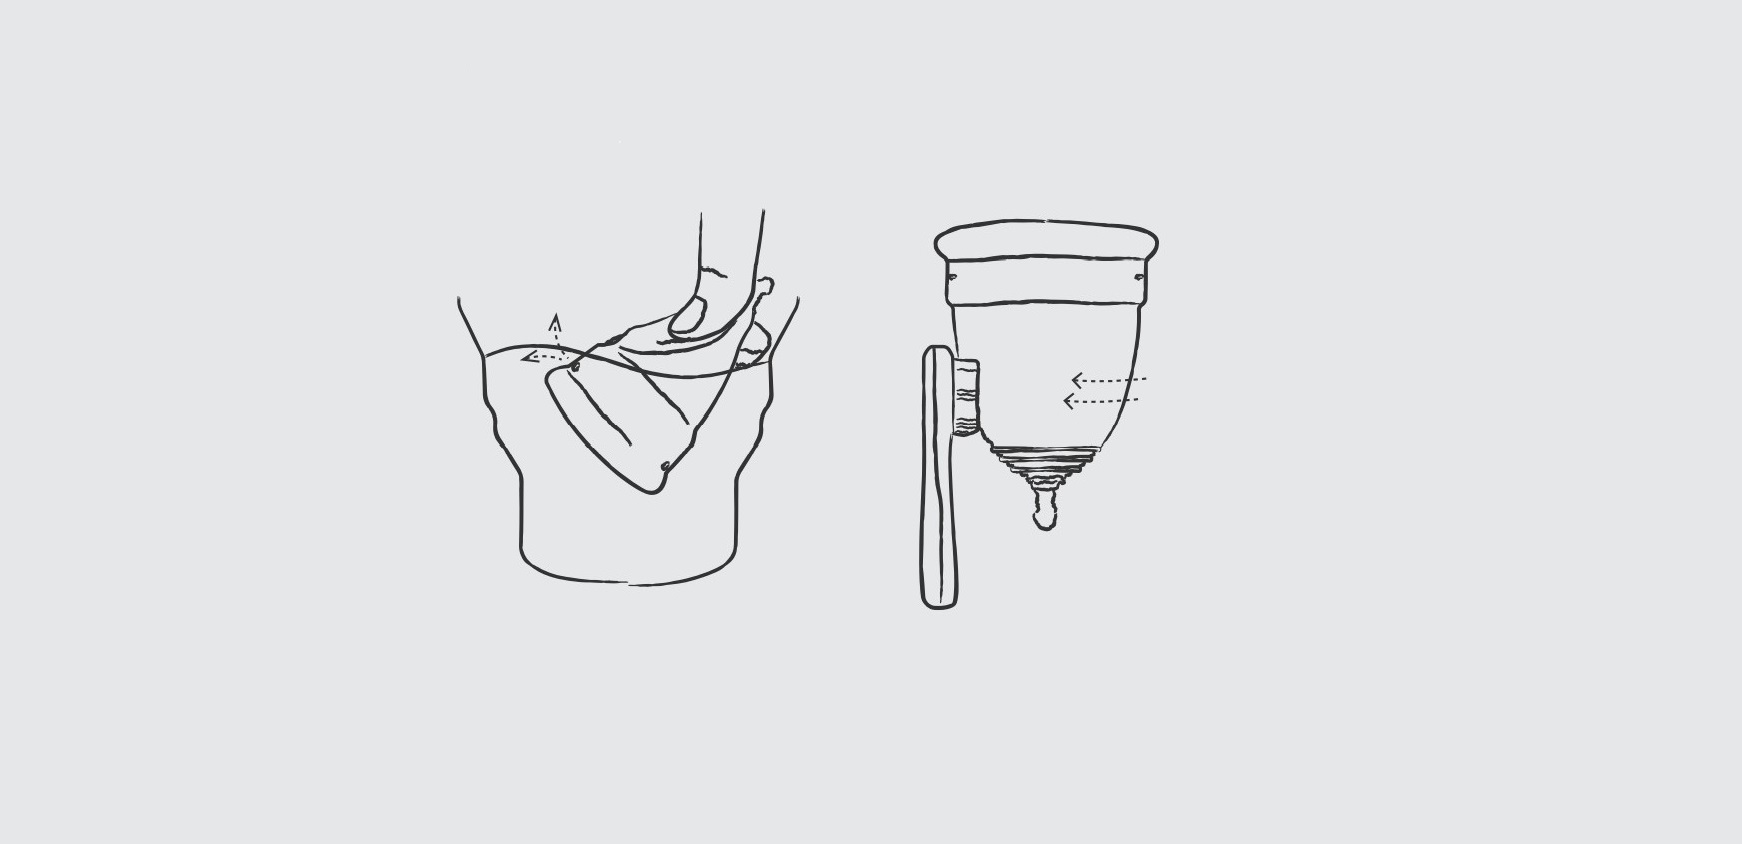 월경컵의 공기구멍에서 월경혈을 빼내는 모습. 월경컵을 솔로 닦는 모습.